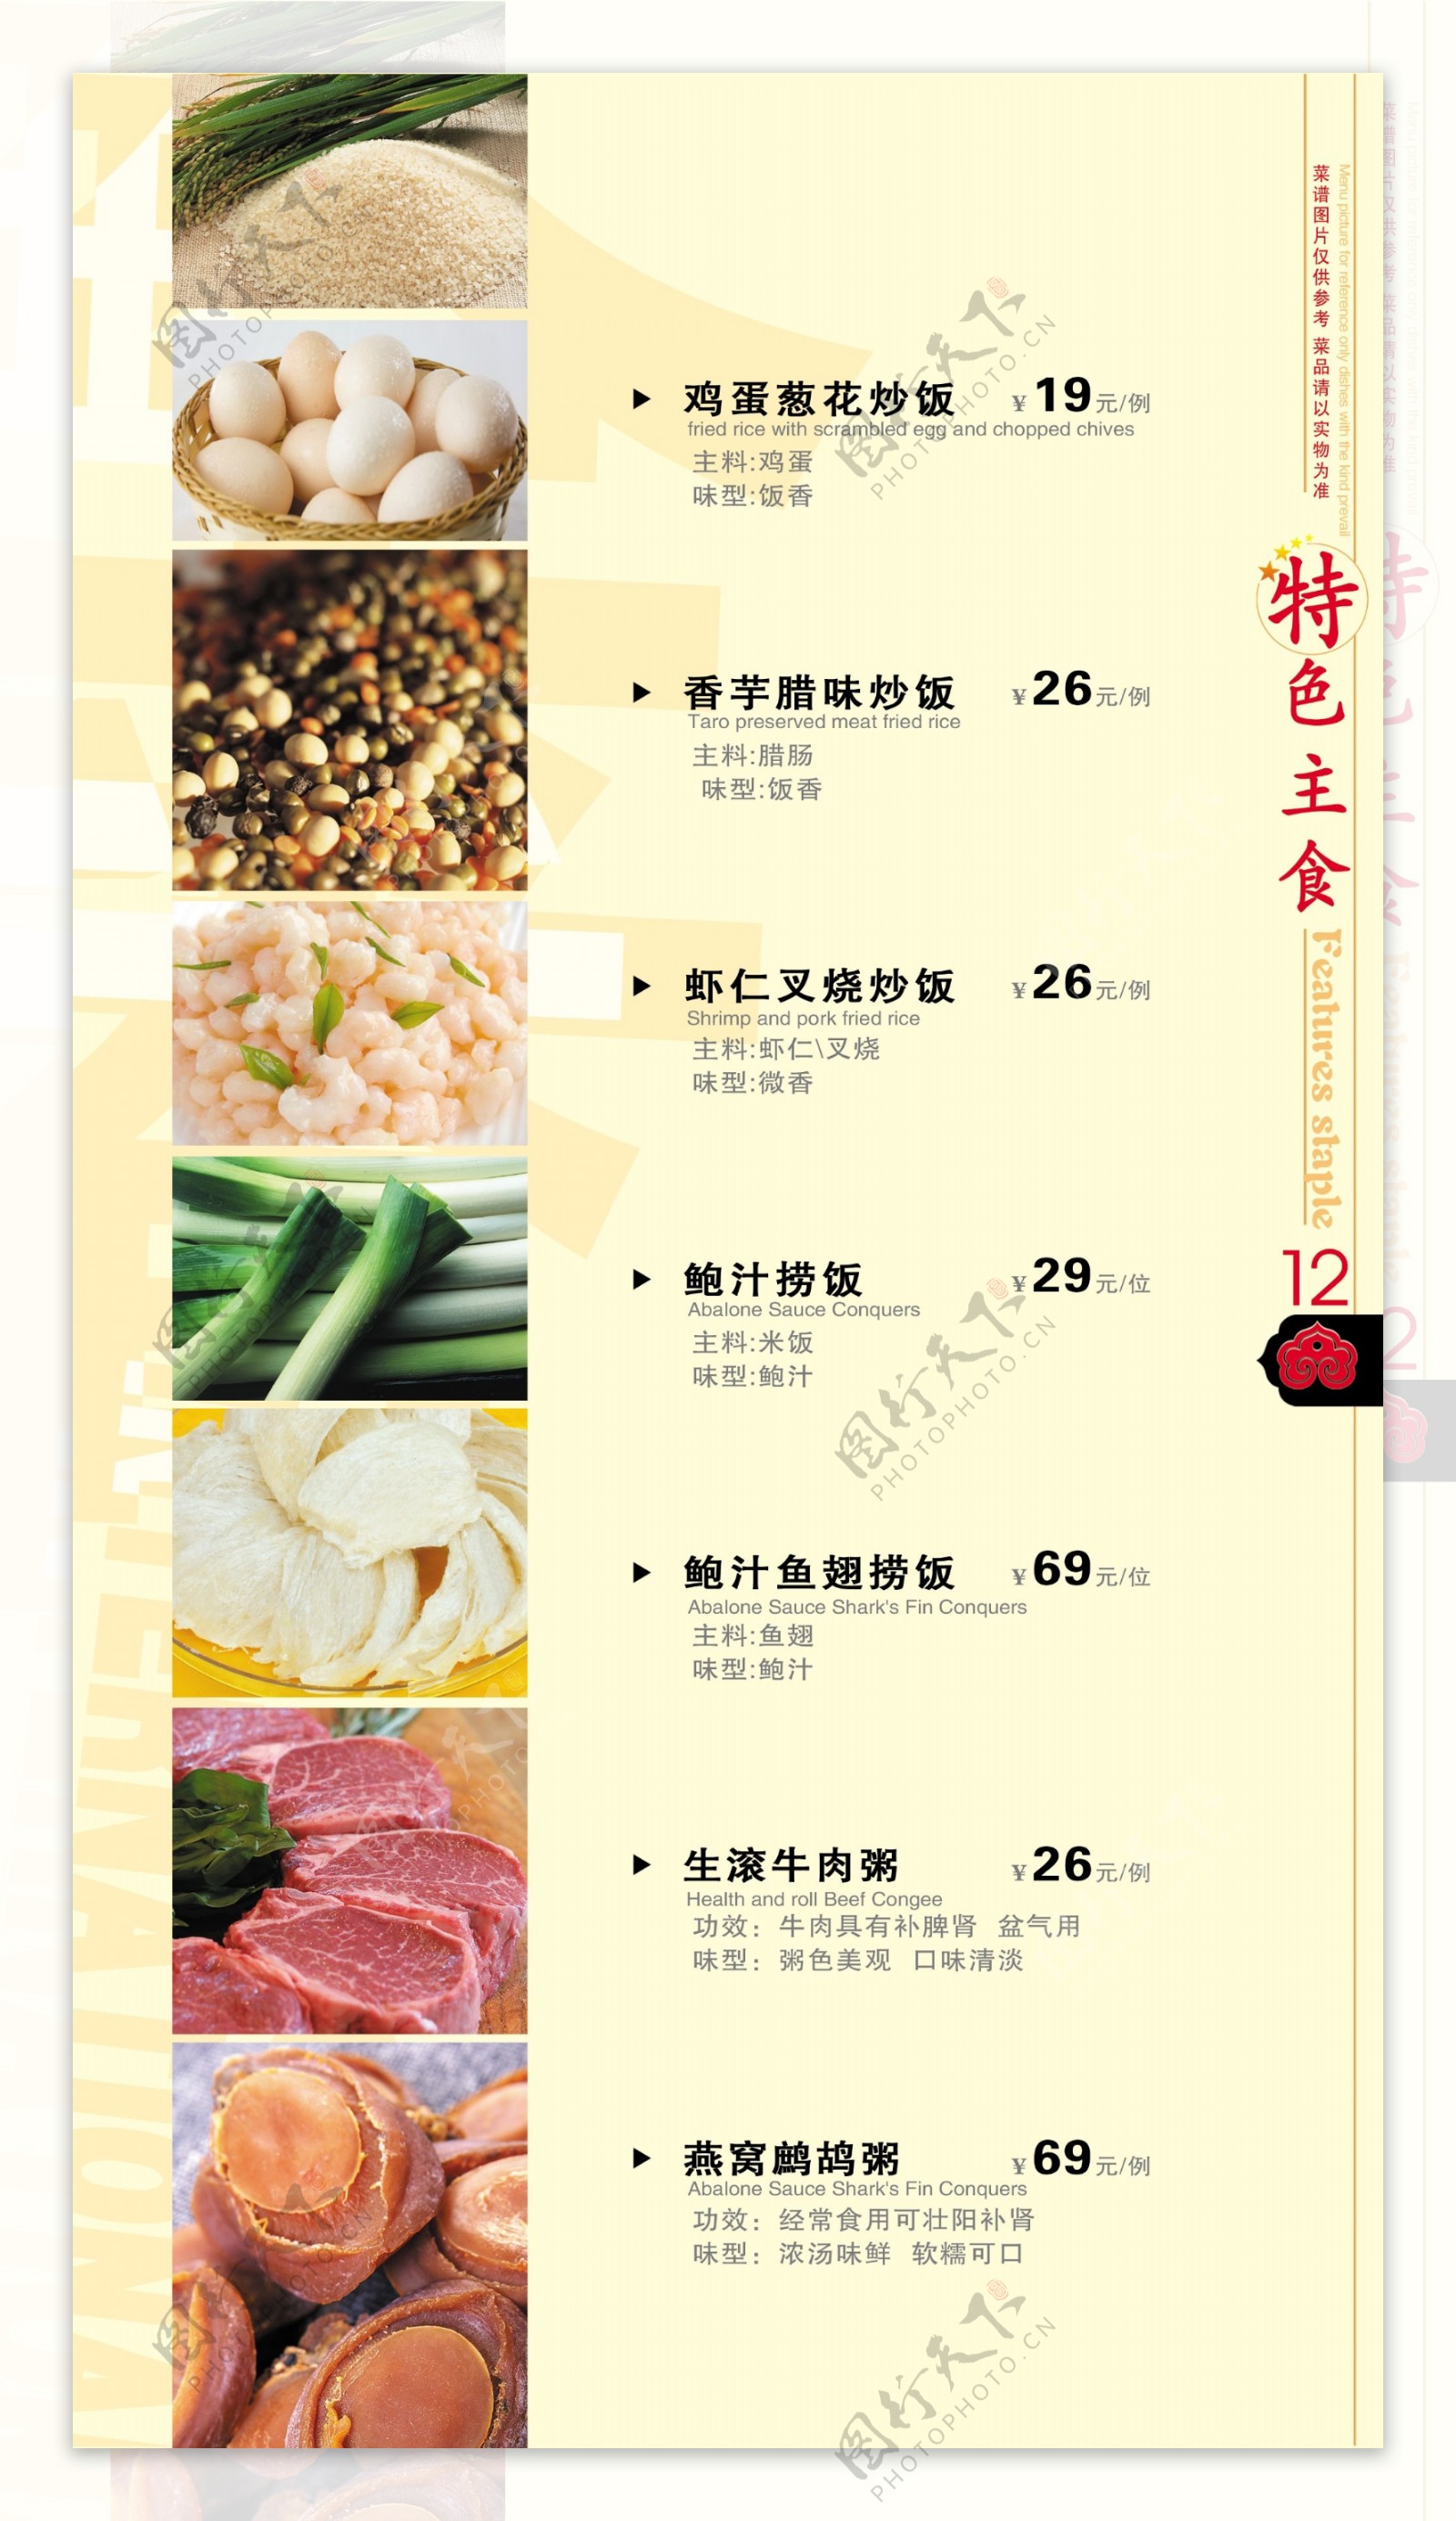 玉金香国际大酒店菜谱系例图片